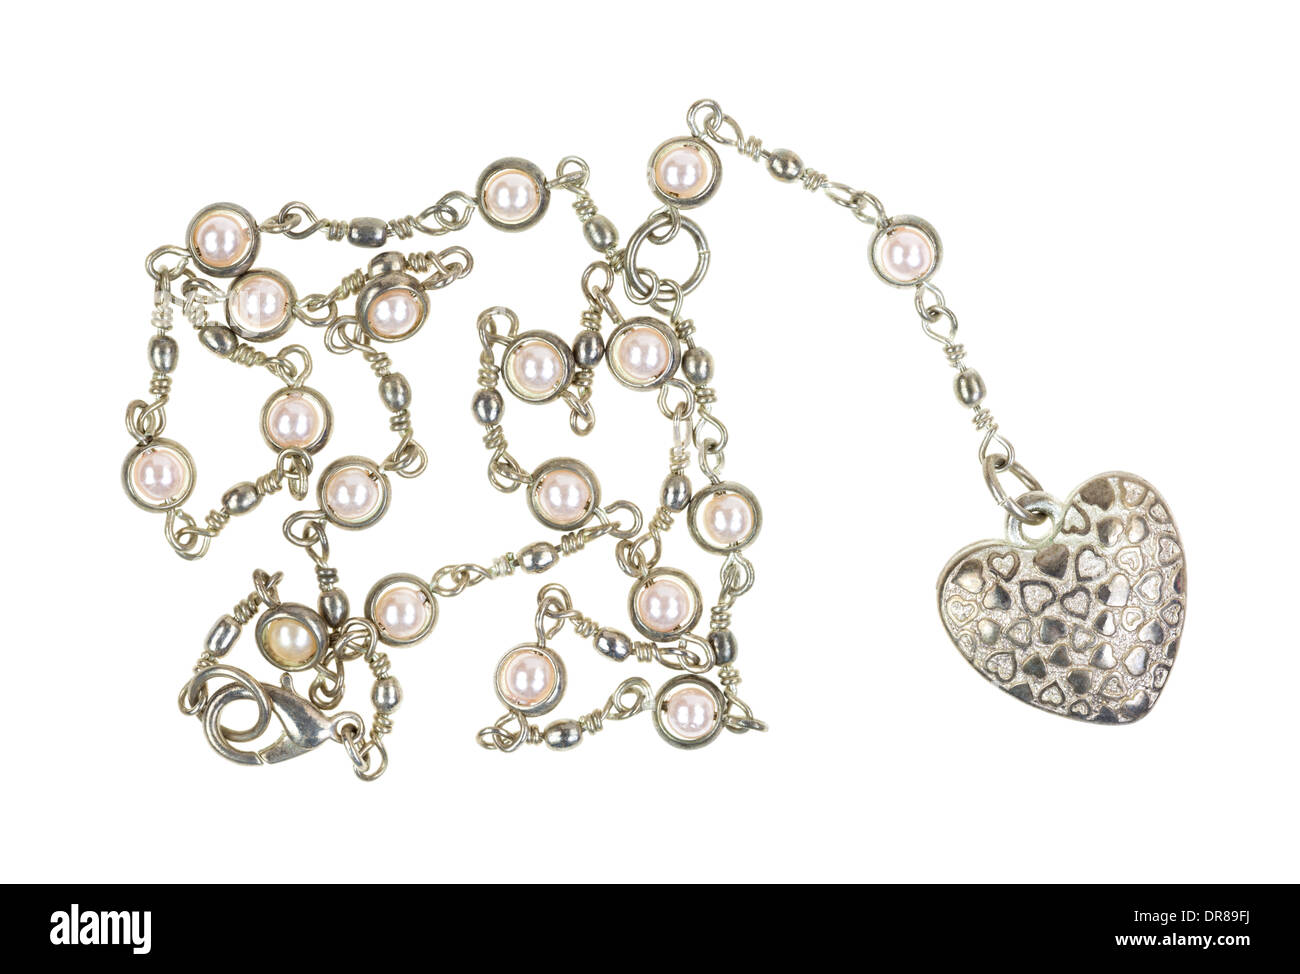 Un medallón en forma de corazón en una cadena de plata con perlas sobre un fondo blanco. Foto de stock